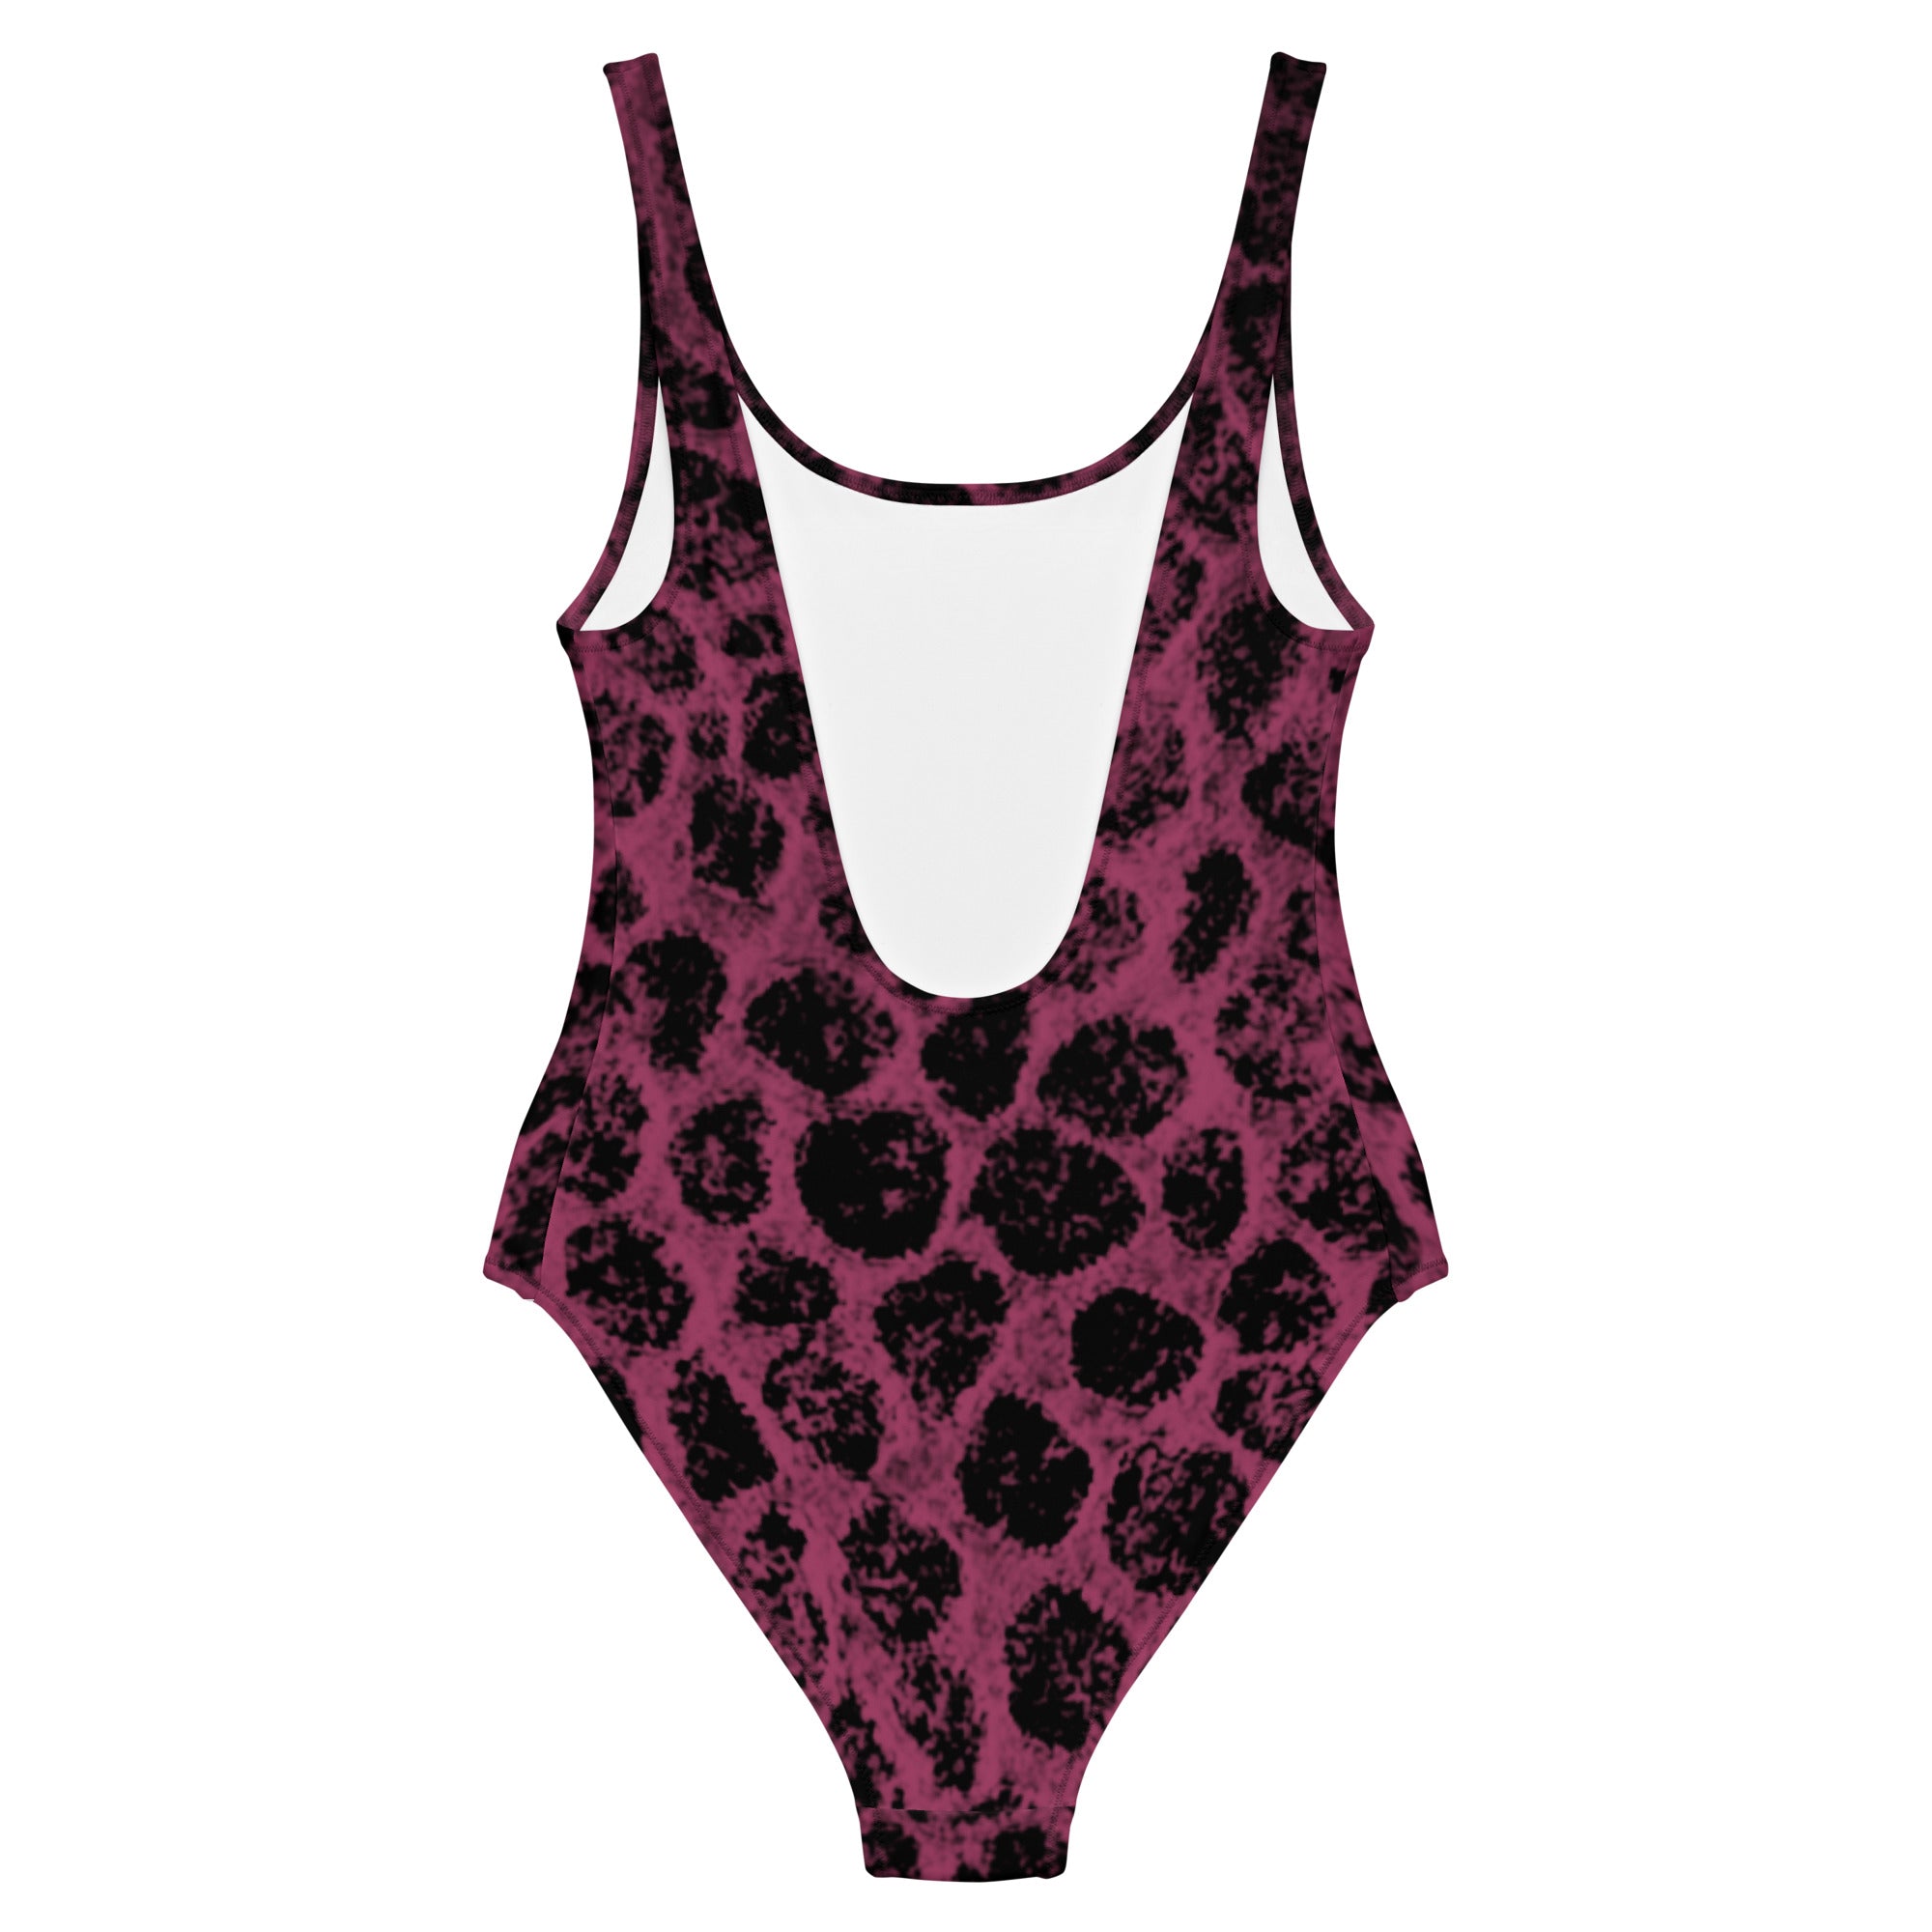 Leopard print women’s one-piece swimsuit